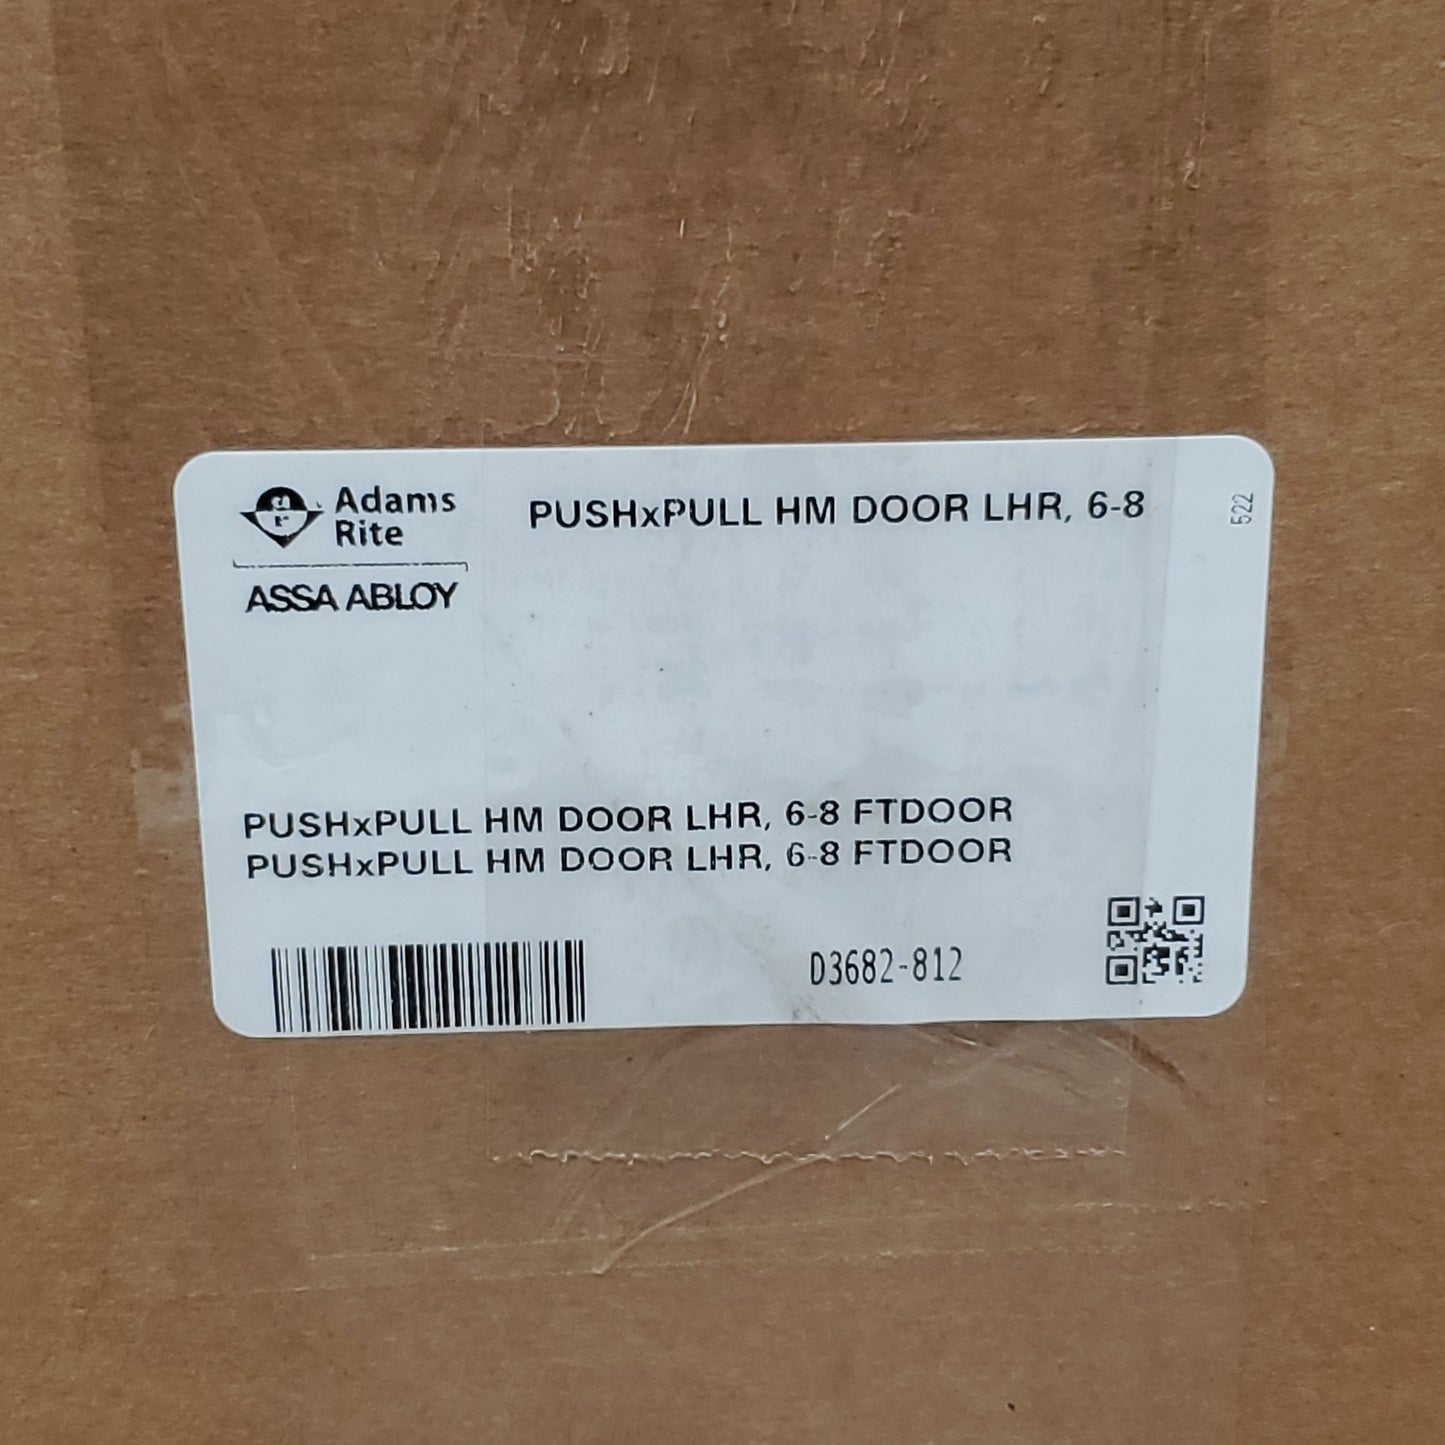 ADAMS RITE Push & Pull Paddle Recessed Door Latch Kit LHR For 6-8 Ft. DOOR Silver / Black Aluminum D3682-812 (New)